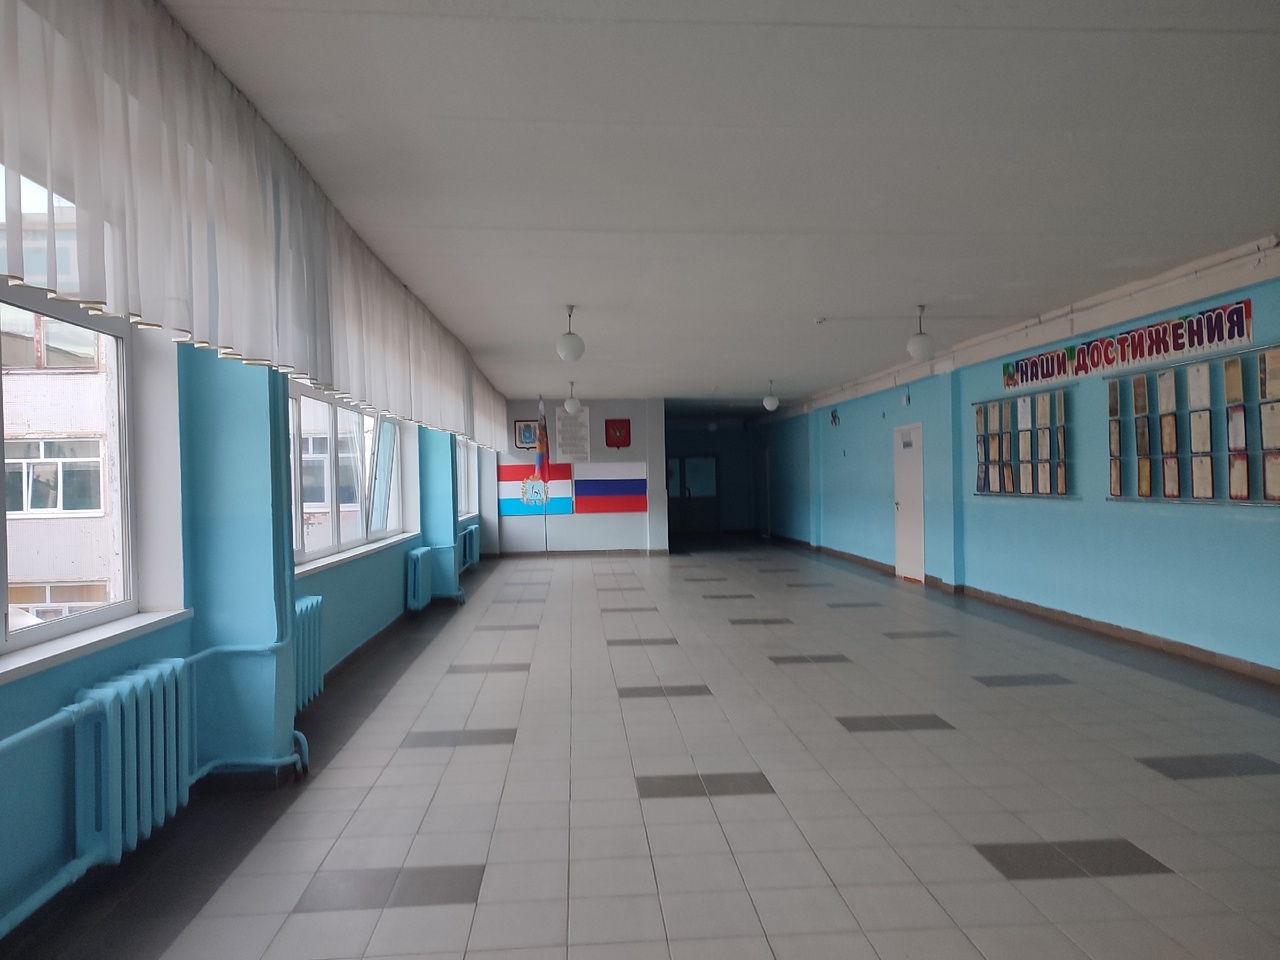  В Самаре директора школы Кировского района уволили из-за утраты доверия 